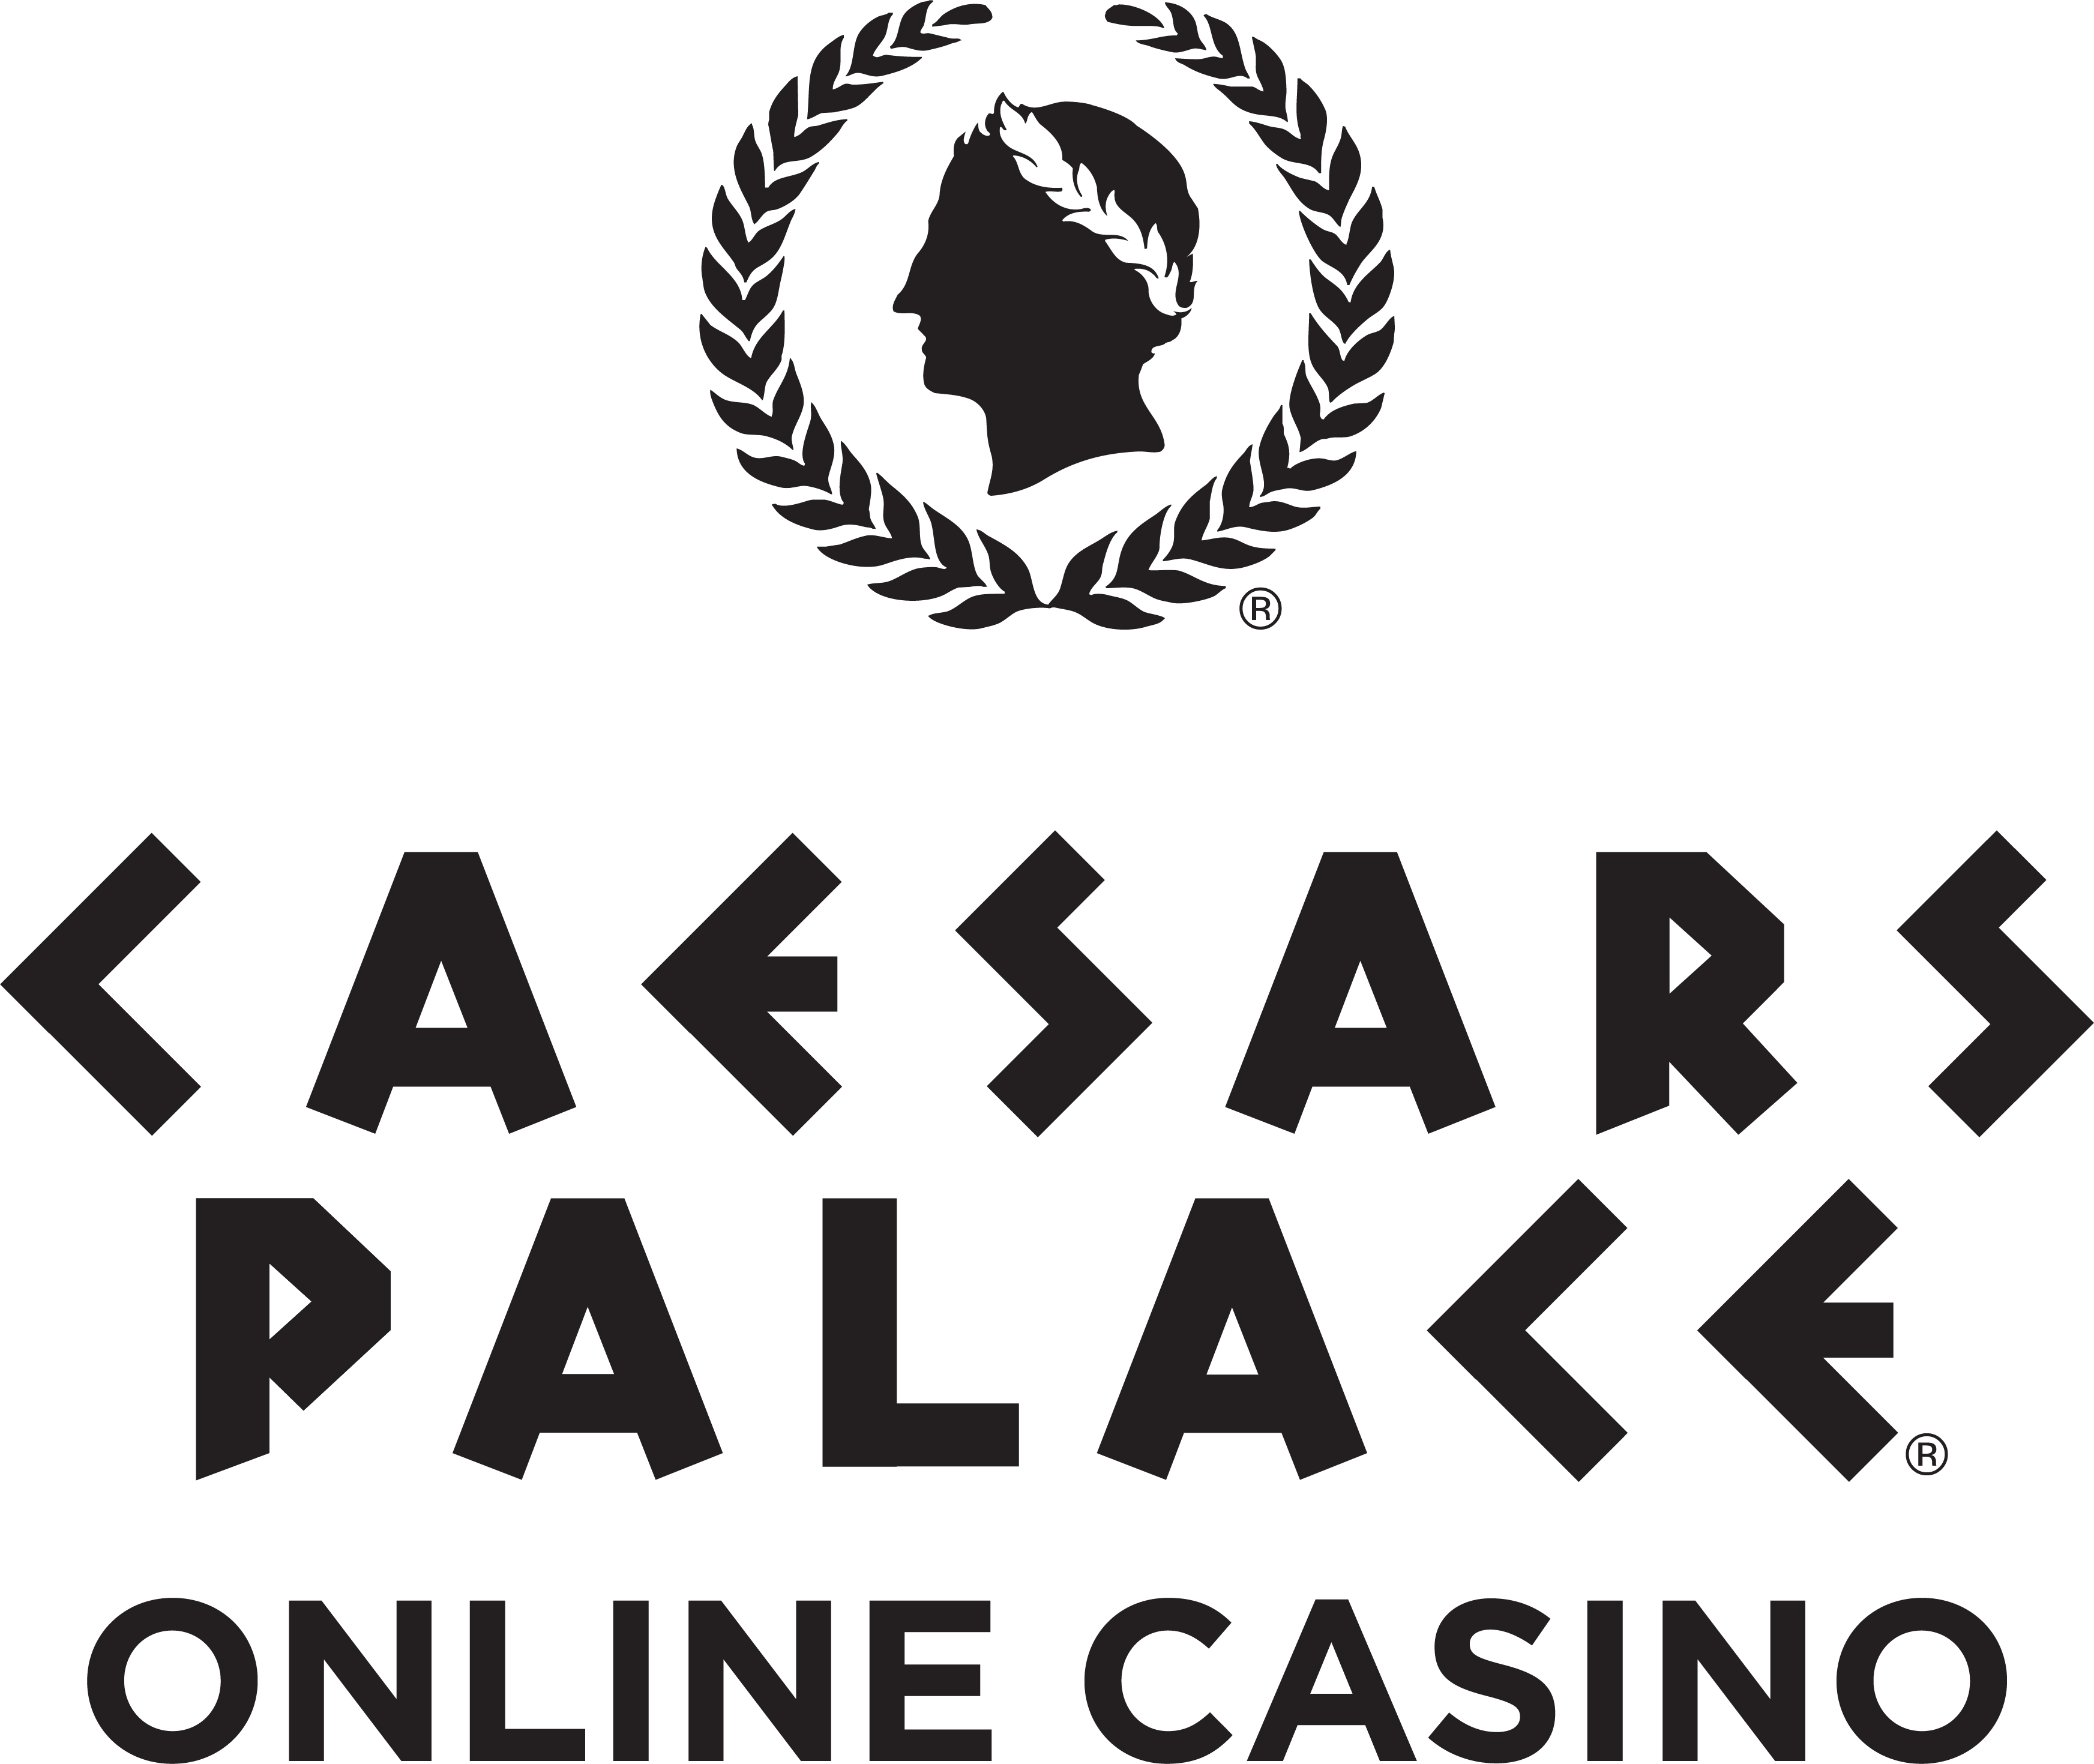 i8 Live: Your Premier Online Casino Platform 